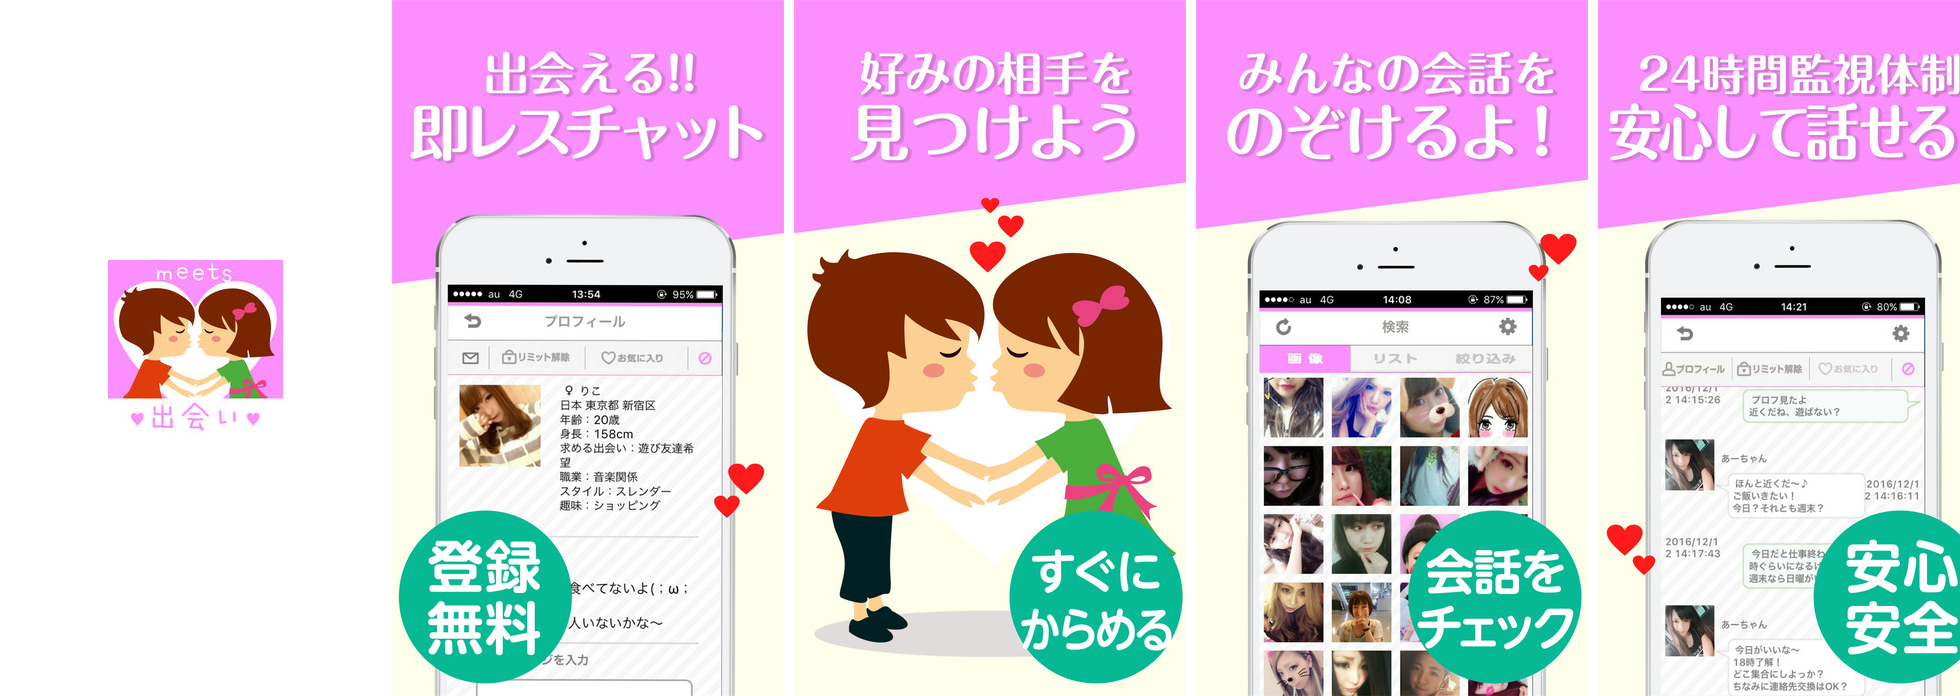 即会いチャットmeets - 大人の出会い系 恋愛マッチングアプリ -